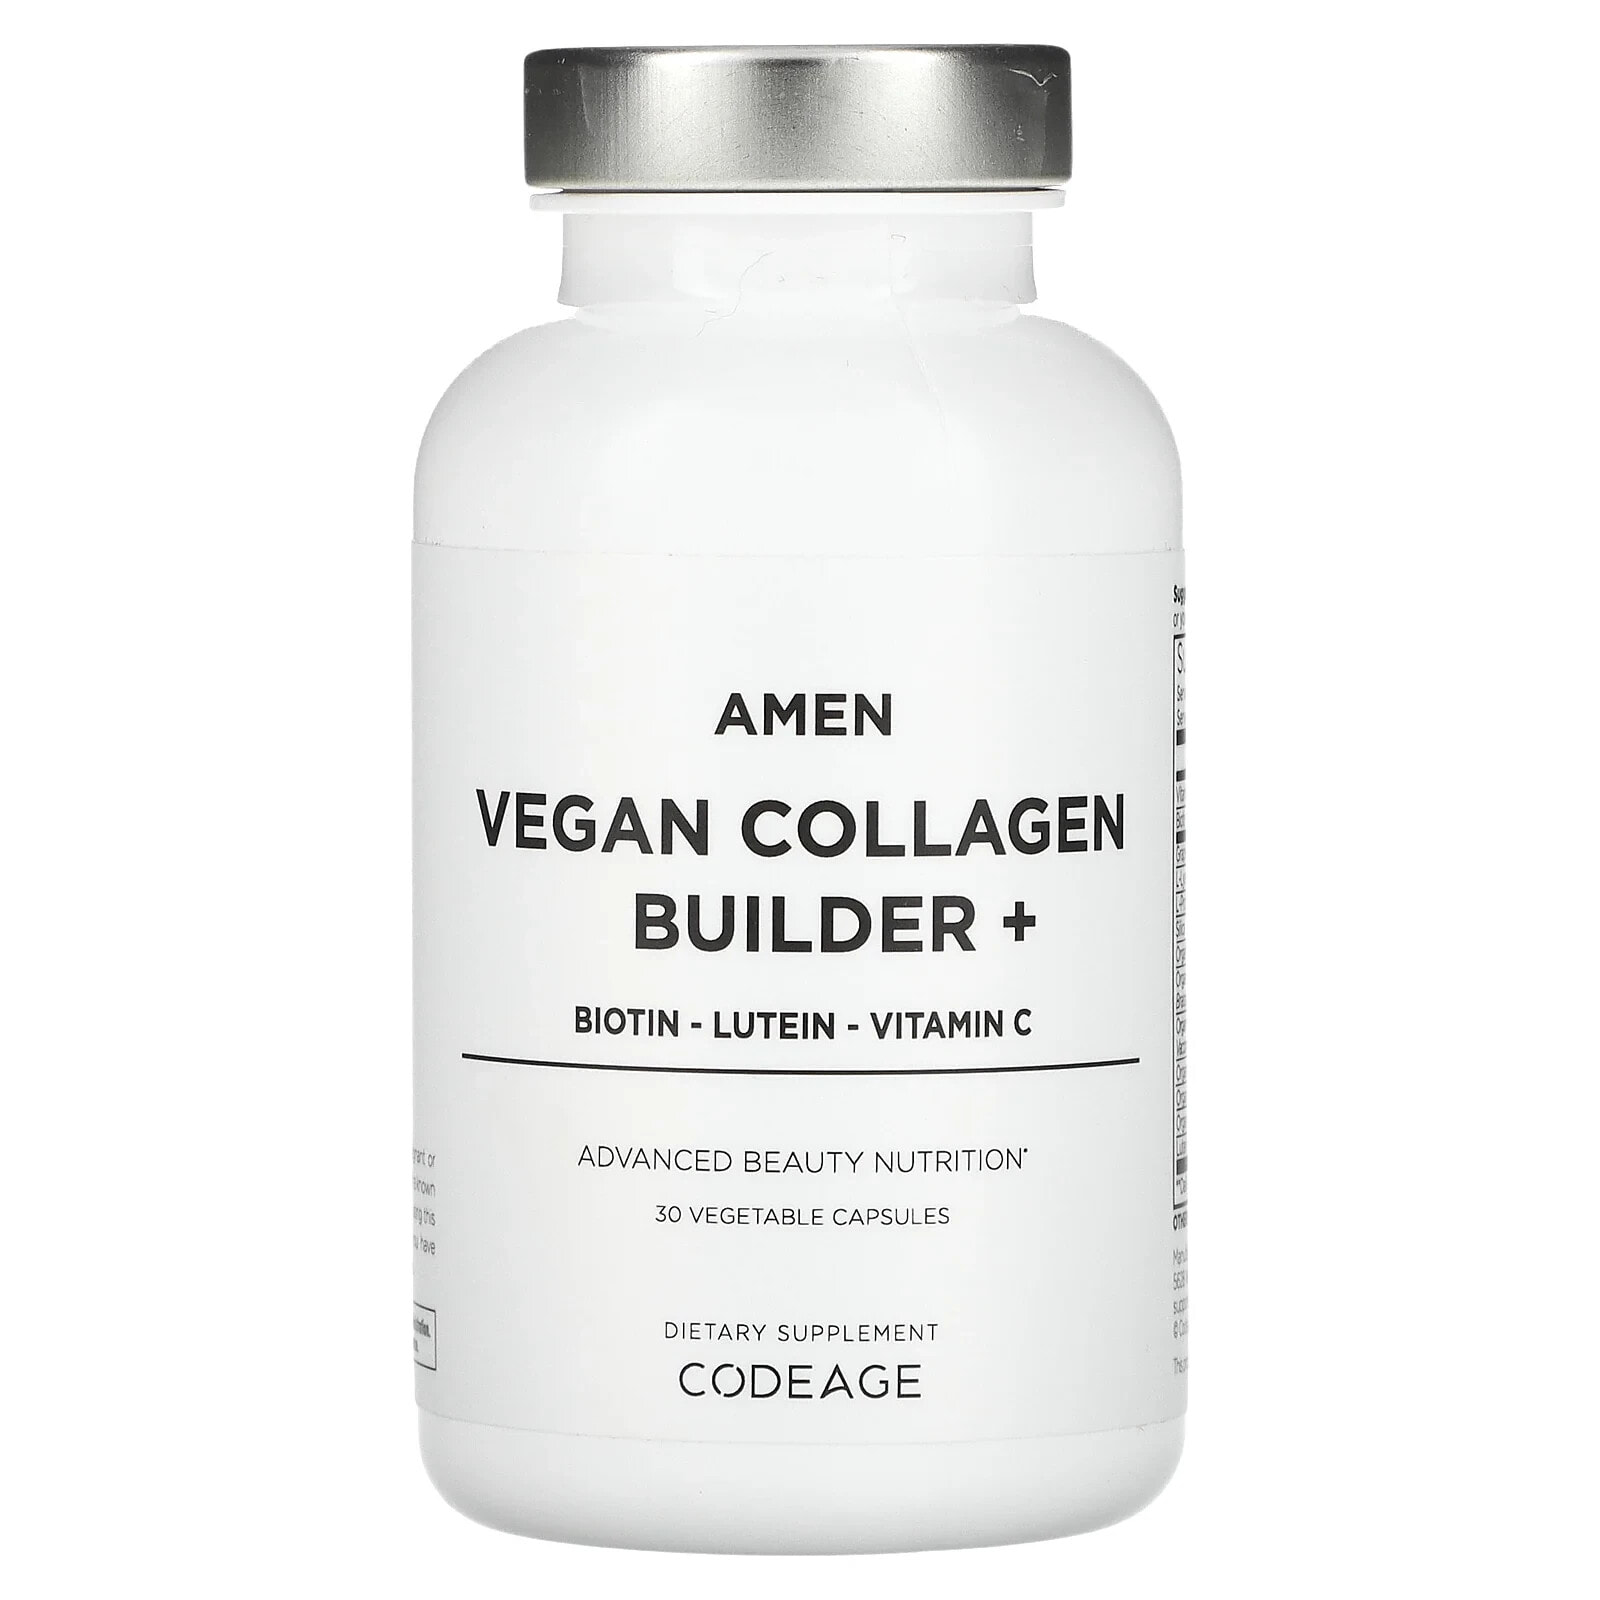 Codeage, Amen, Vegan Collagen Builder+, 30 Vegetable Capsules